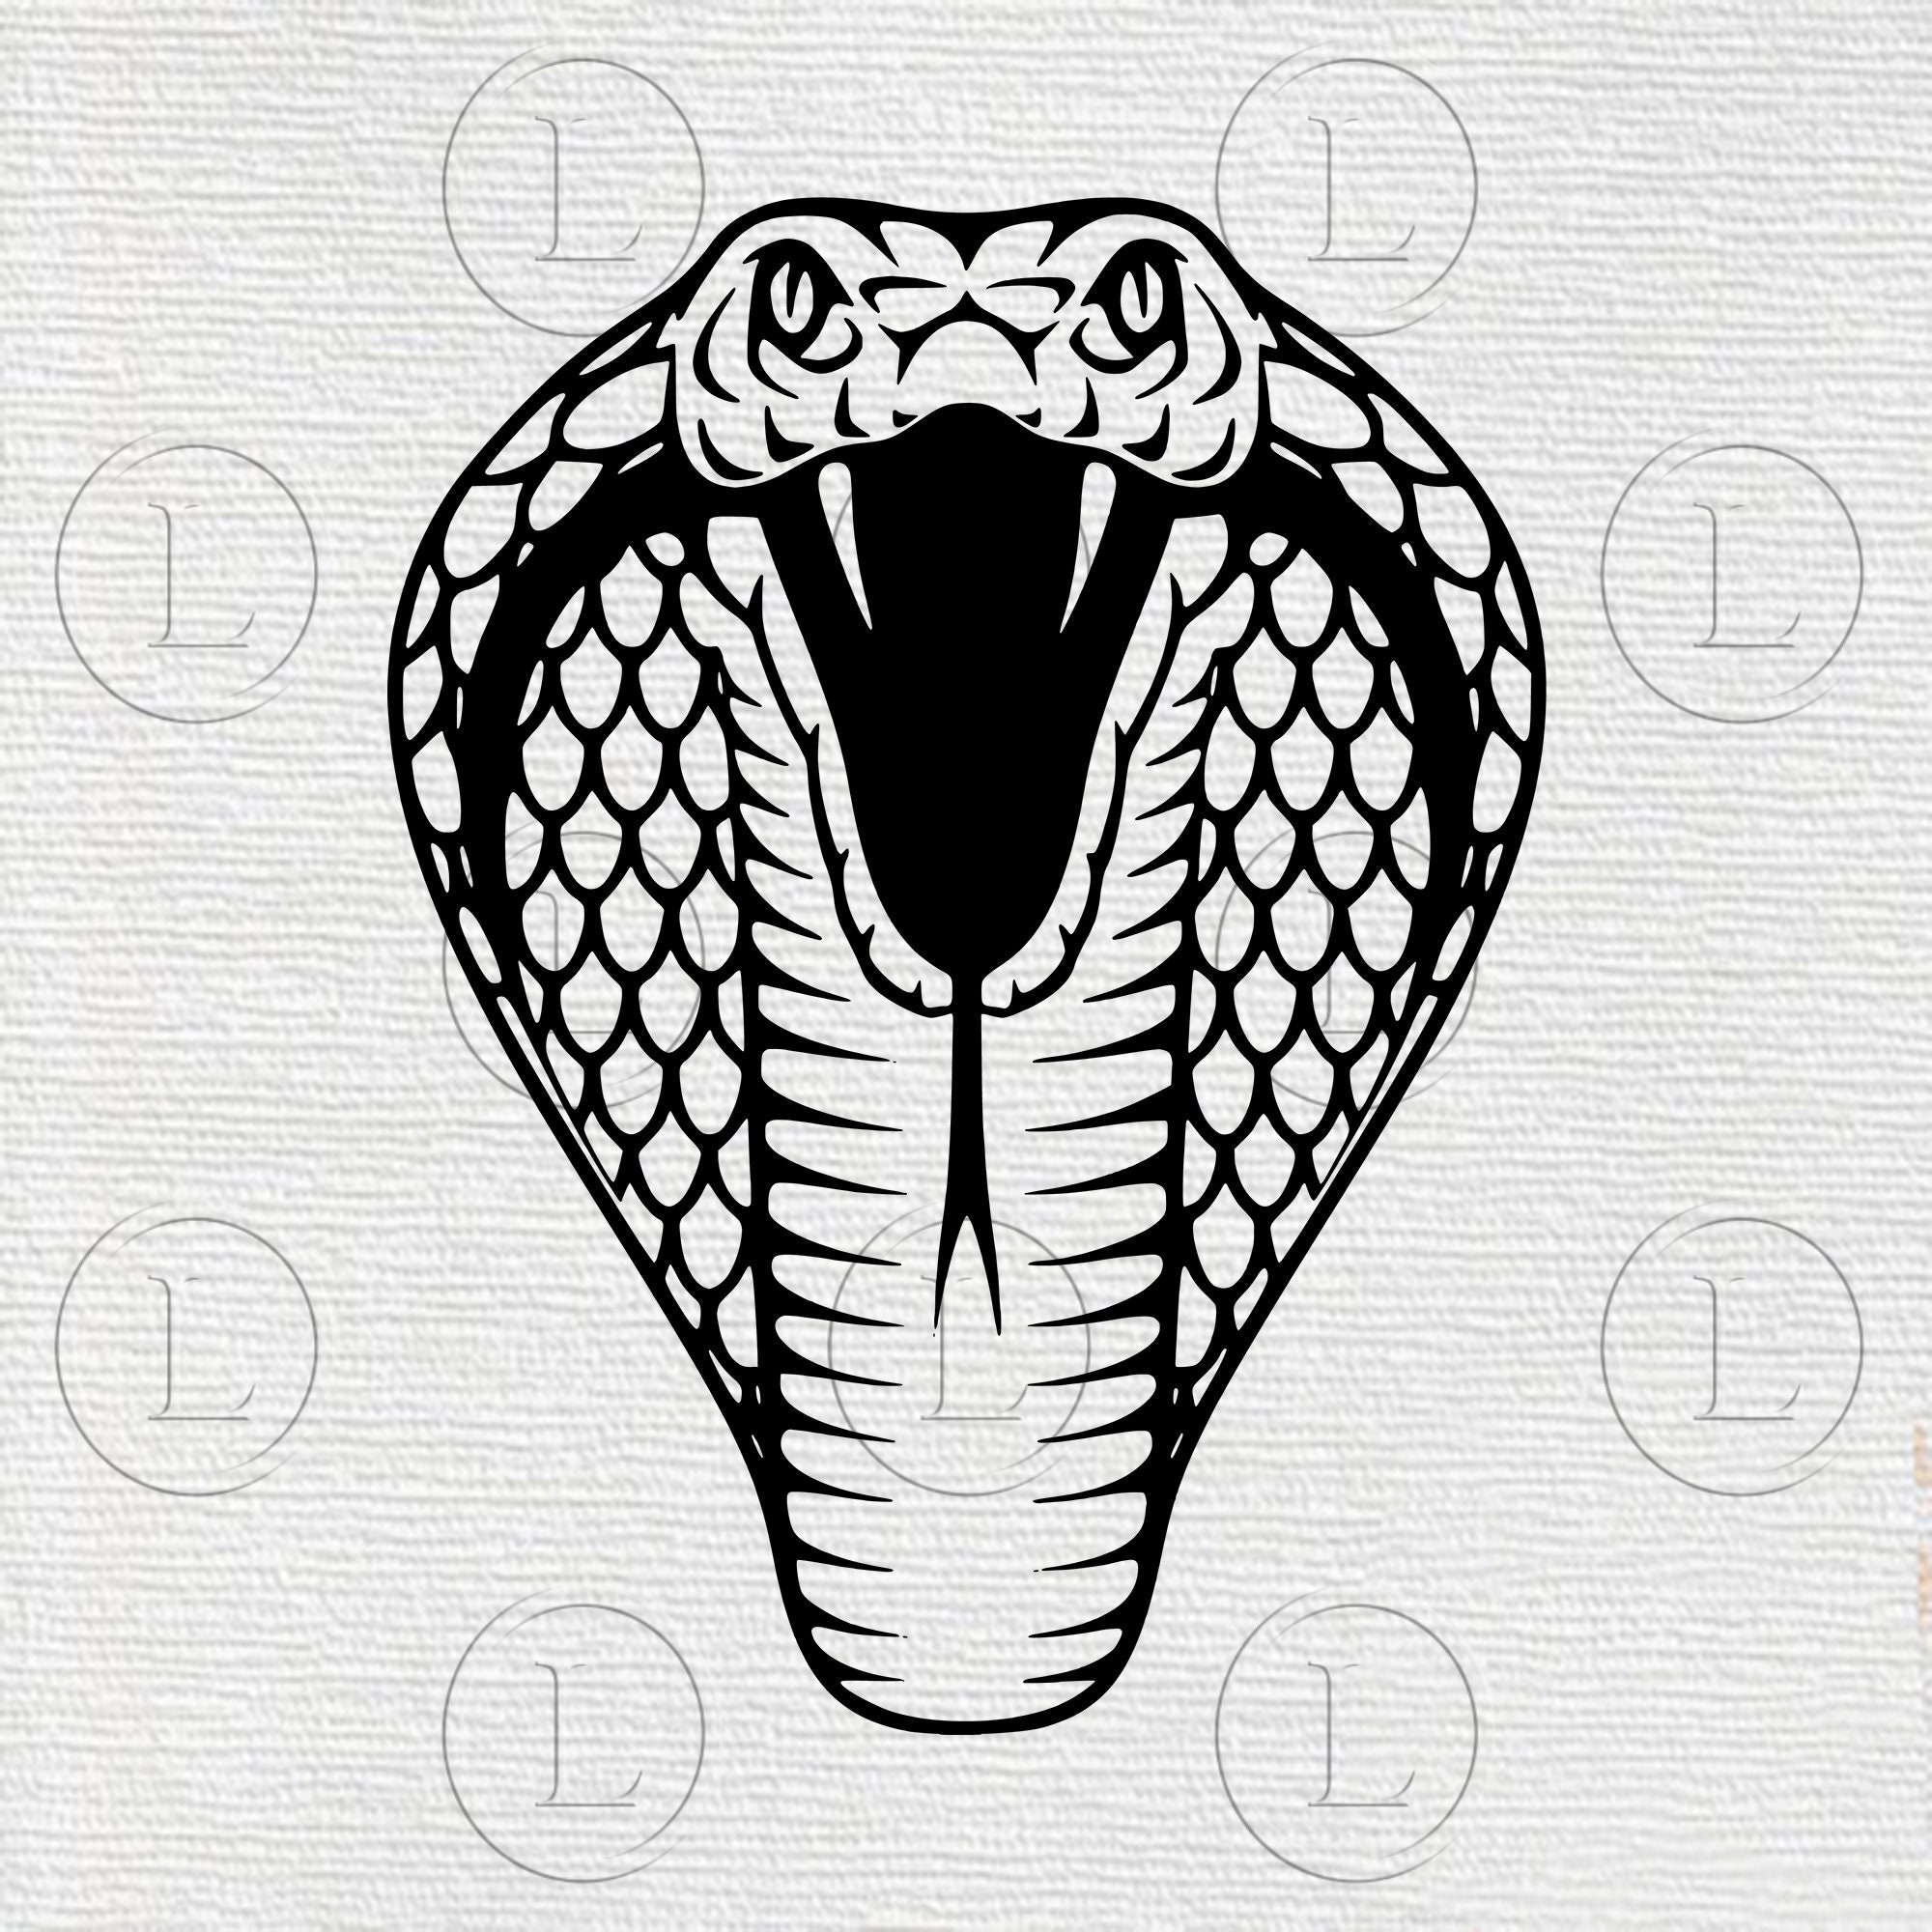 snake drawing